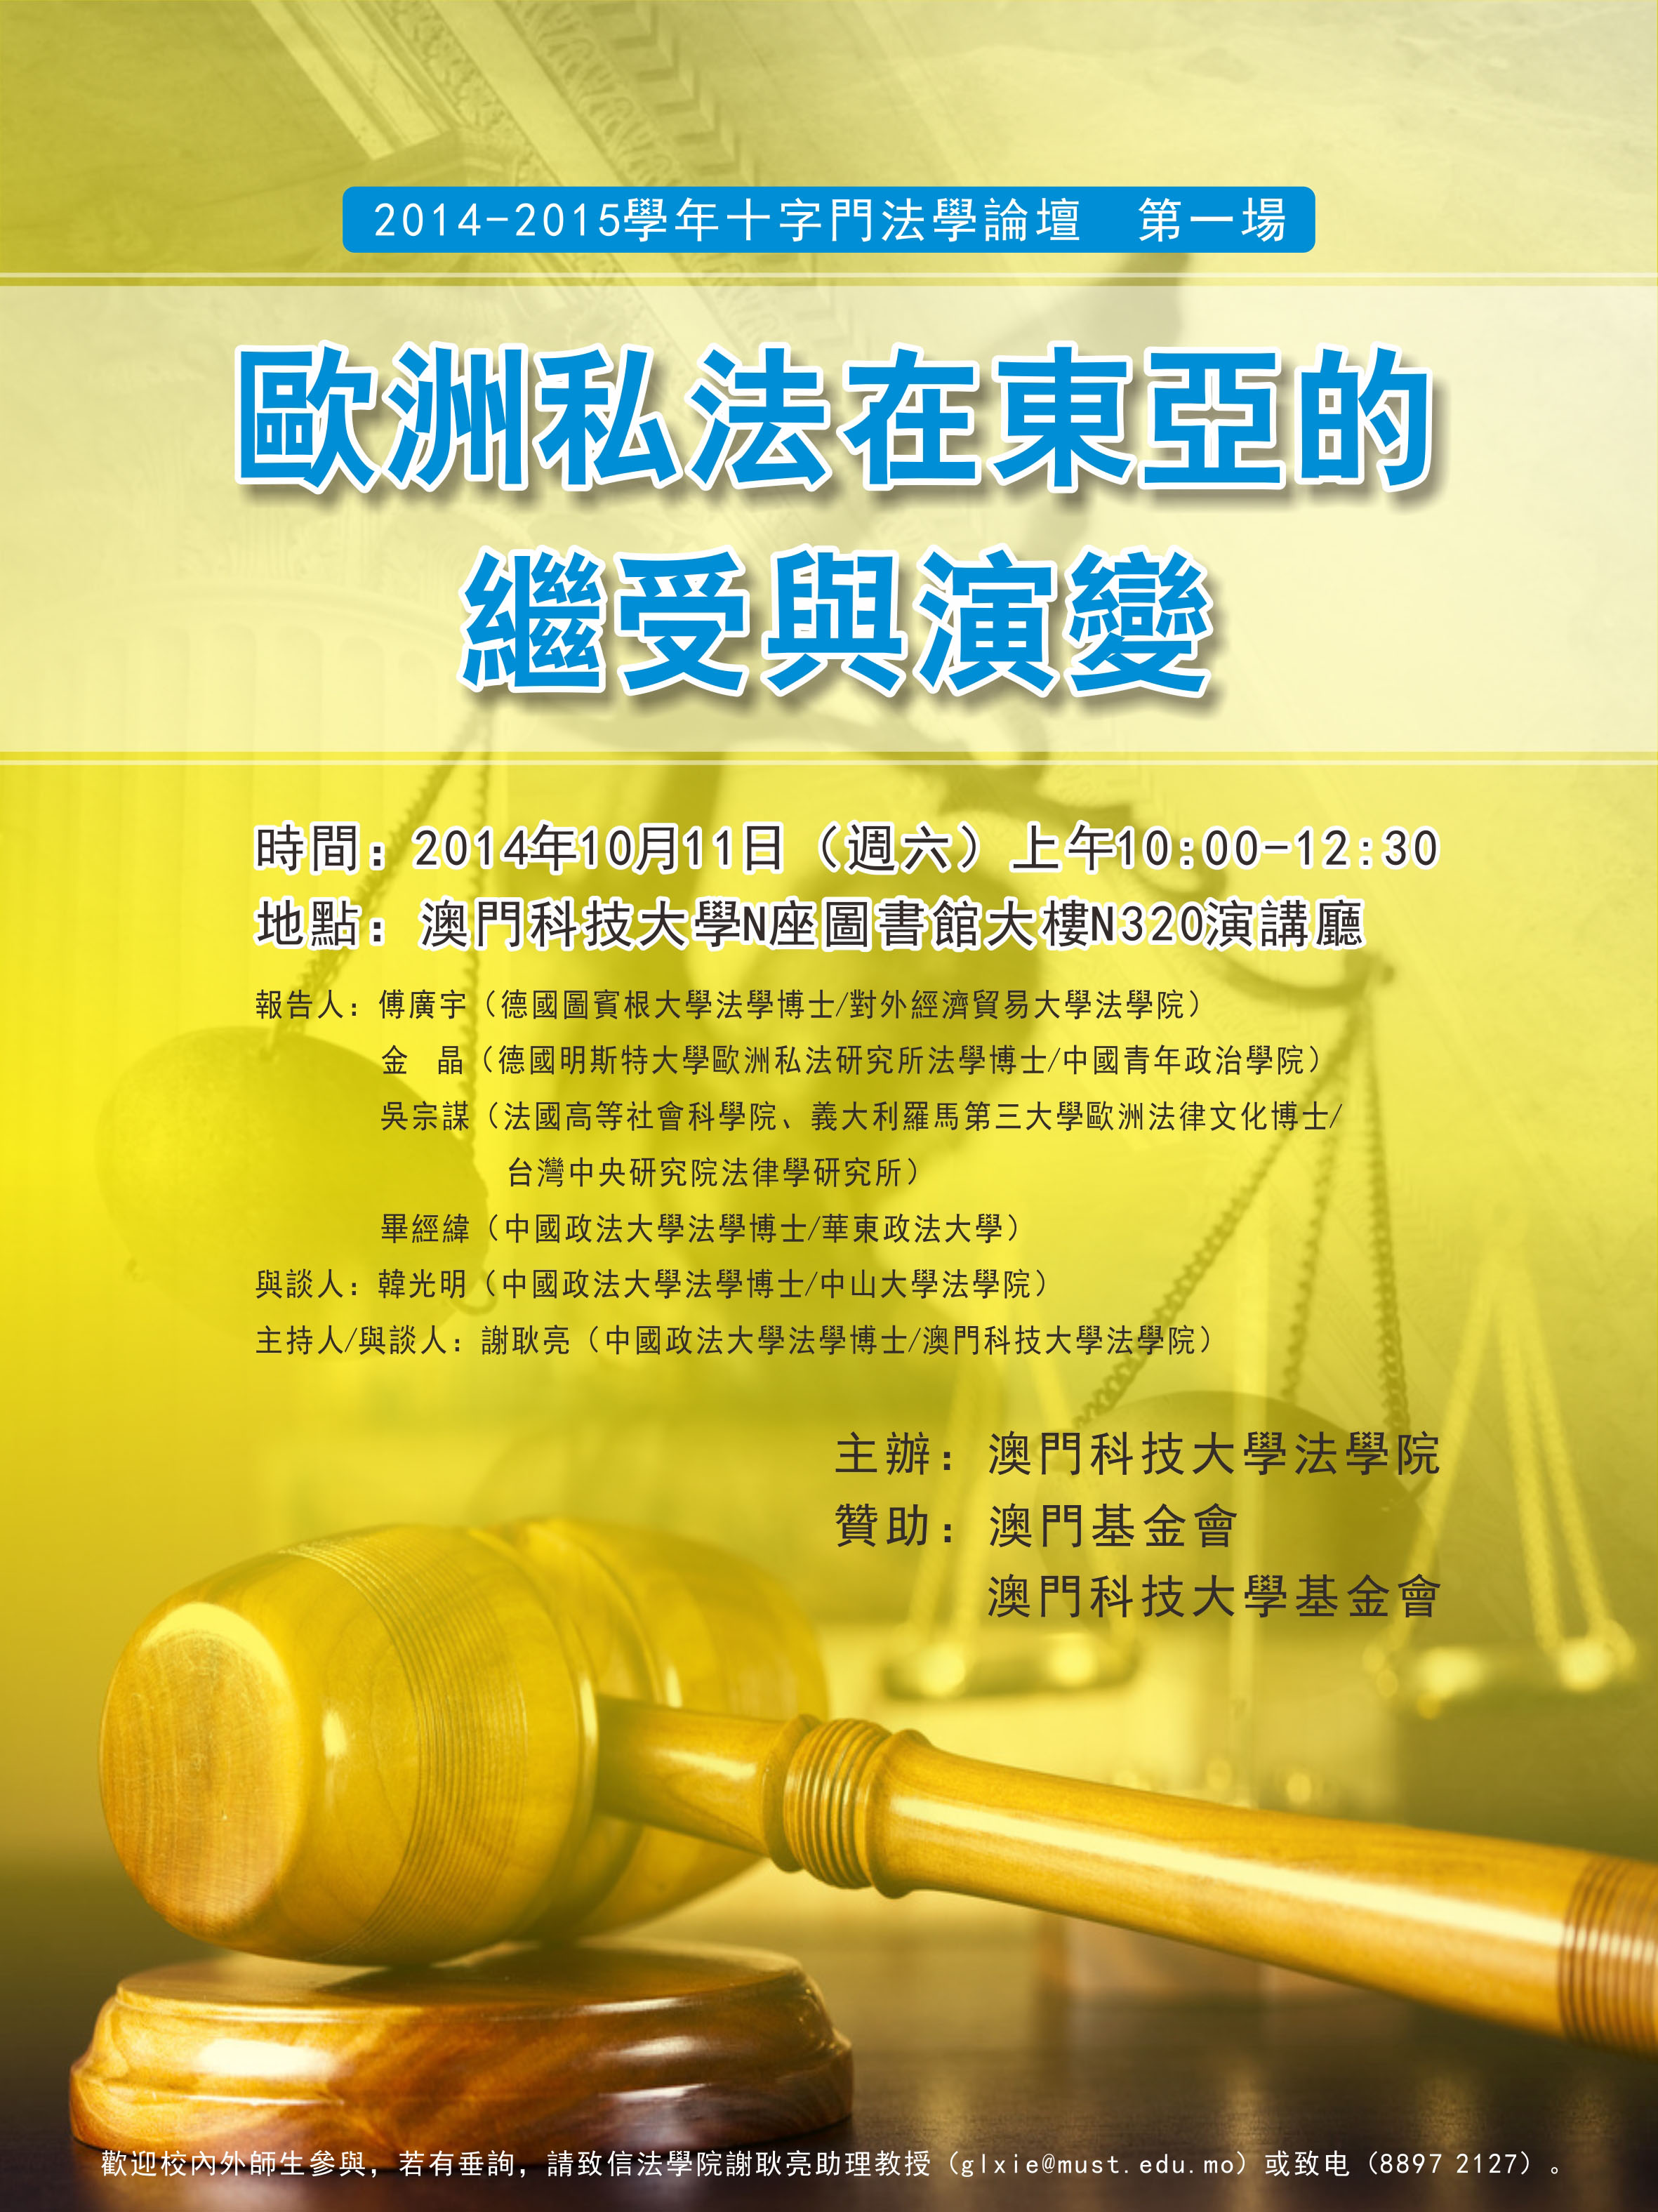 活動預告 十字門法學論壇歐洲私法在東亞的繼受與演變2014年10月11日